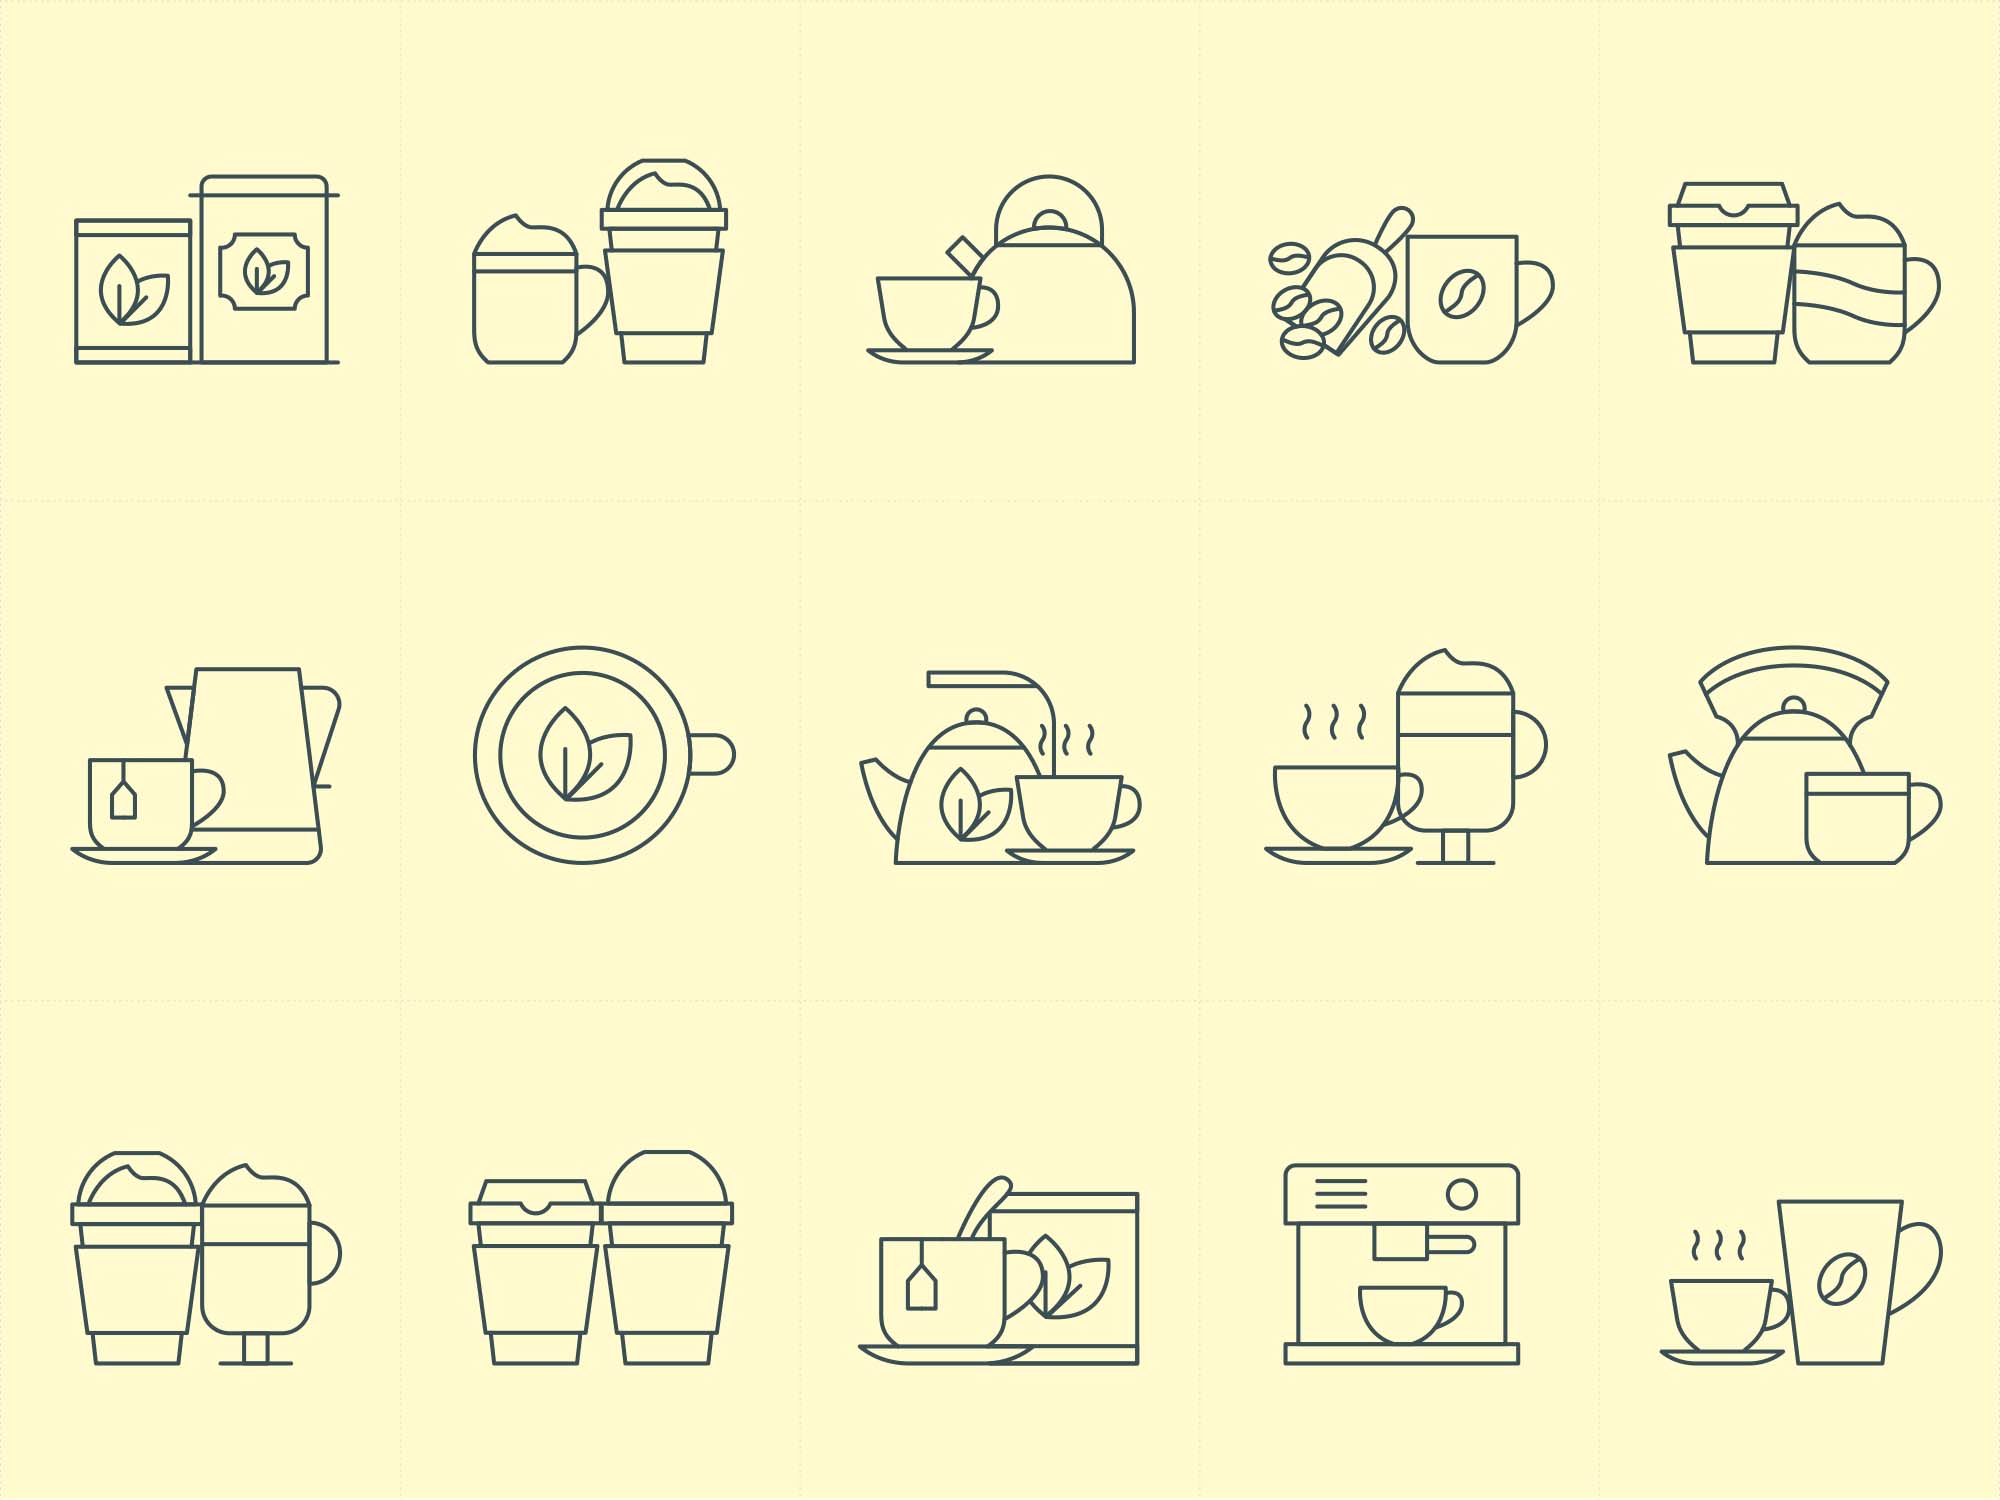 咖啡&茶文化主题矢量线性素材库精选图标 Coffee and Tea Vector Icons插图